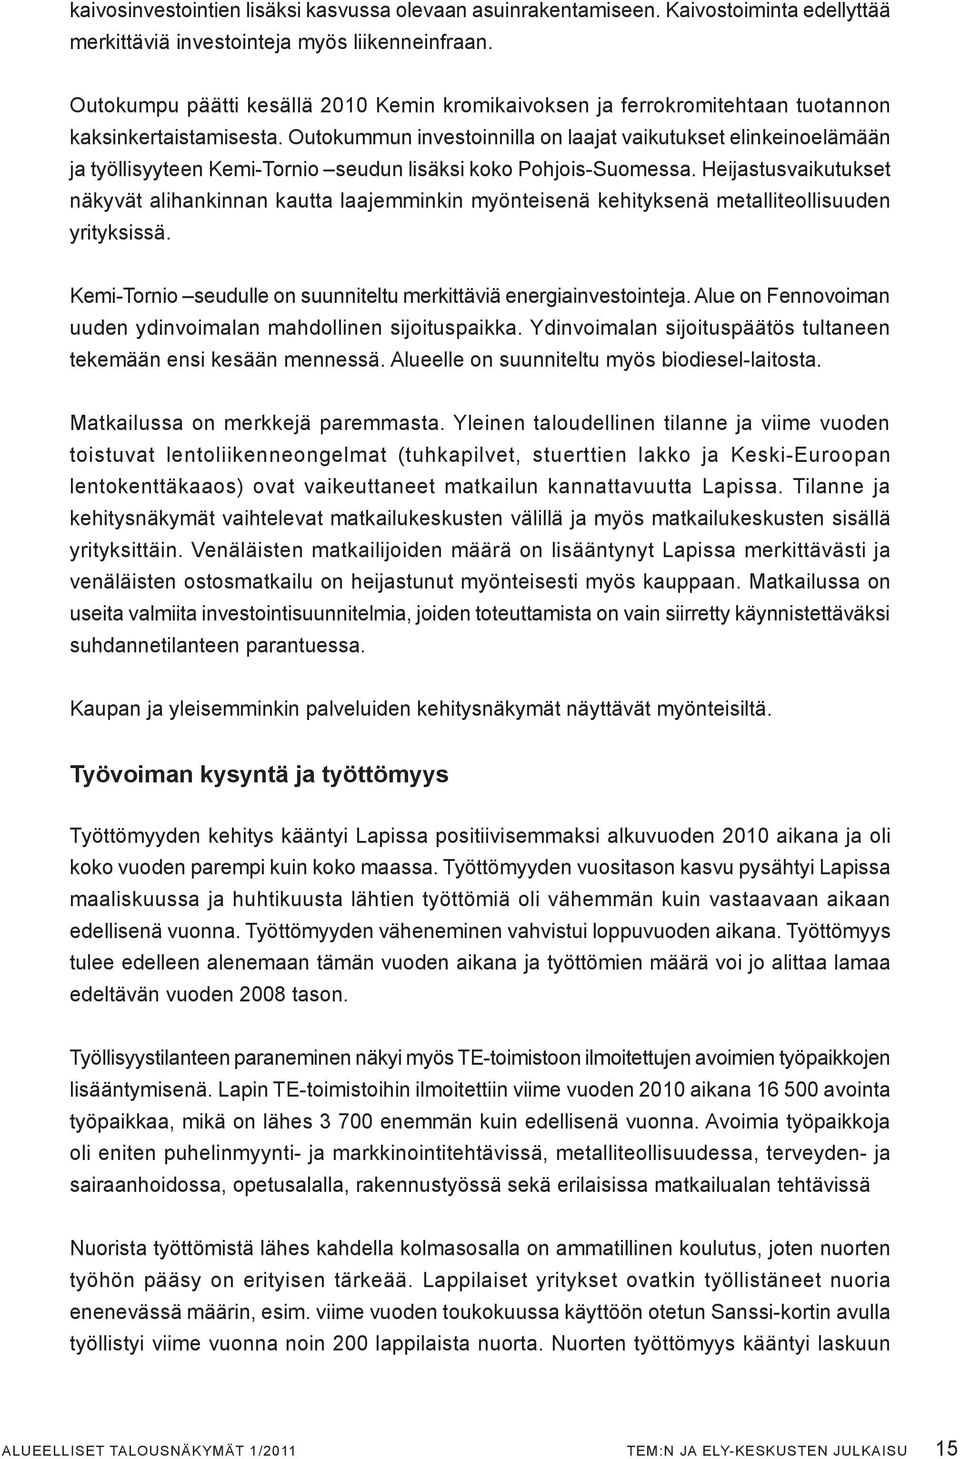 Outokummun investoinnilla on laajat vaikutukset elinkeinoelämään ja työllisyyteen Kemi-Tornio seudun lisäksi koko Pohjois-Suomessa.